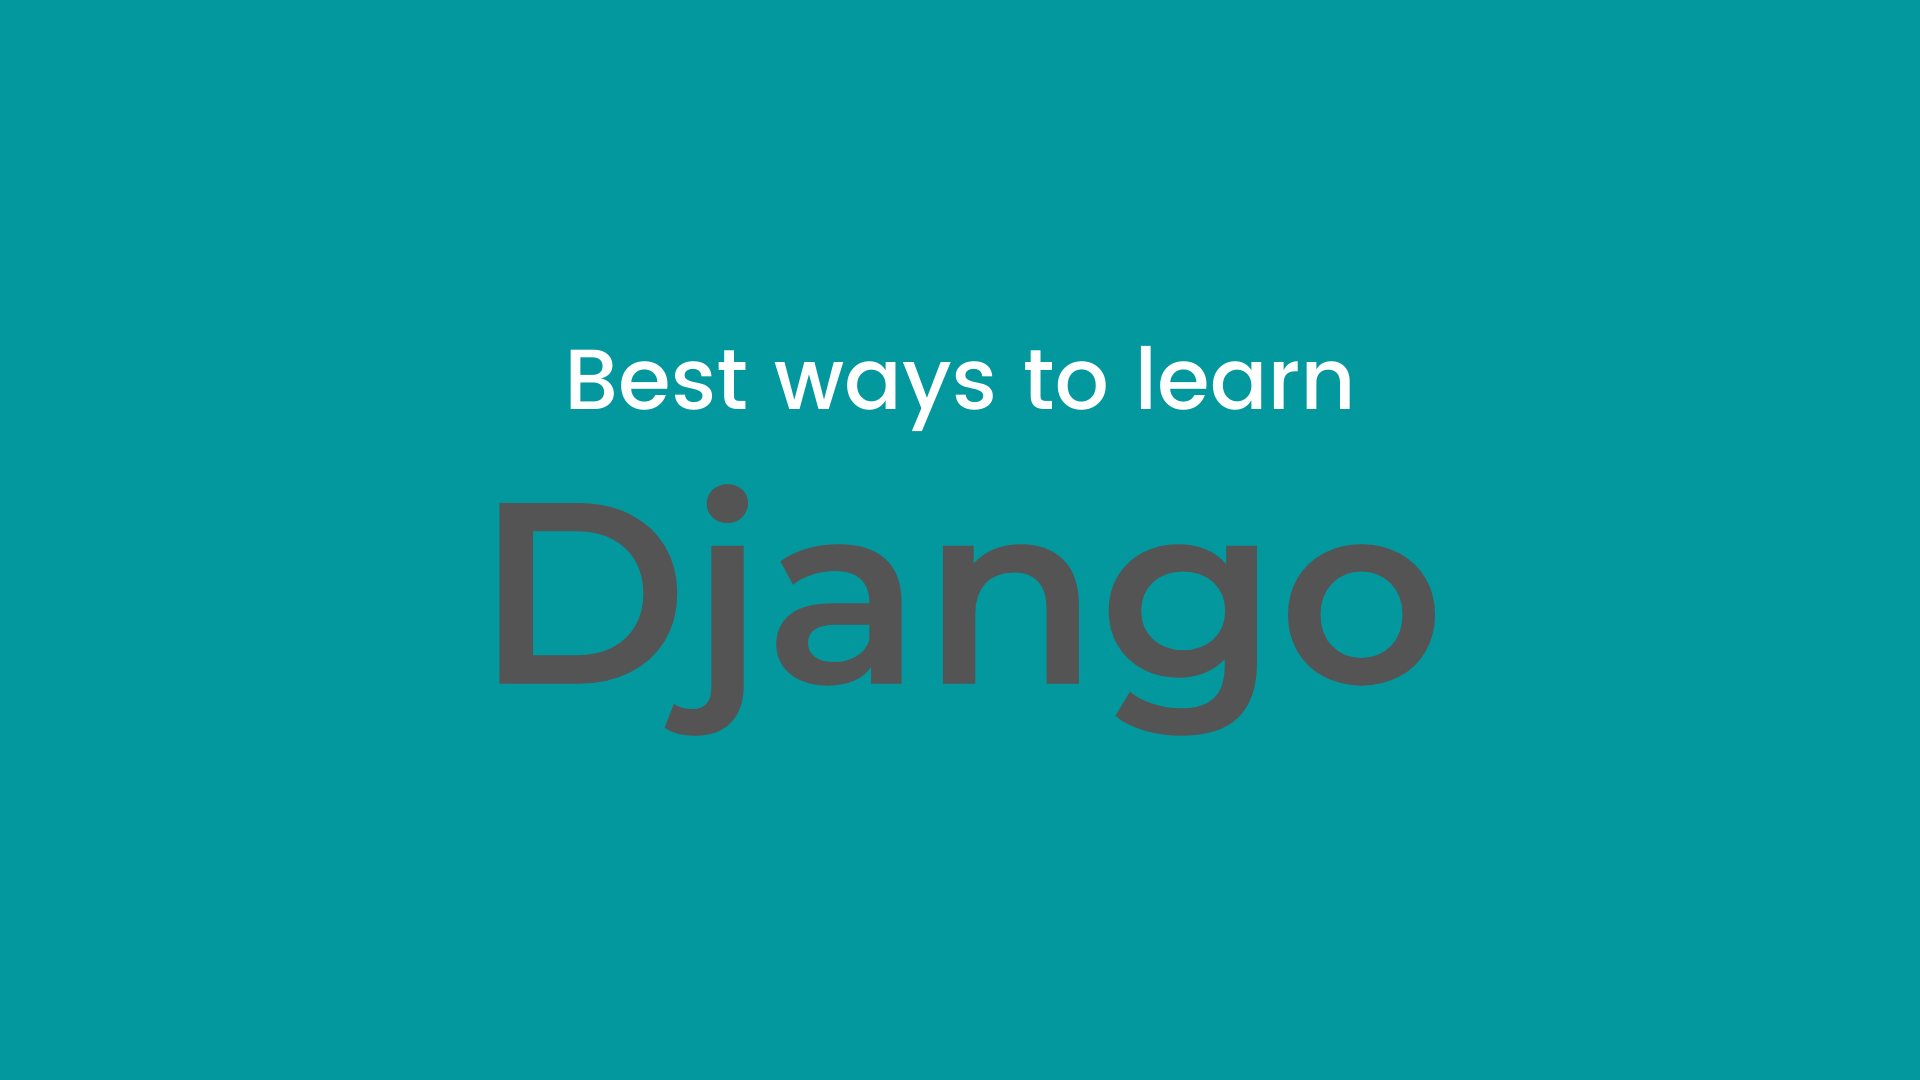 Best way to learn Django in 2020